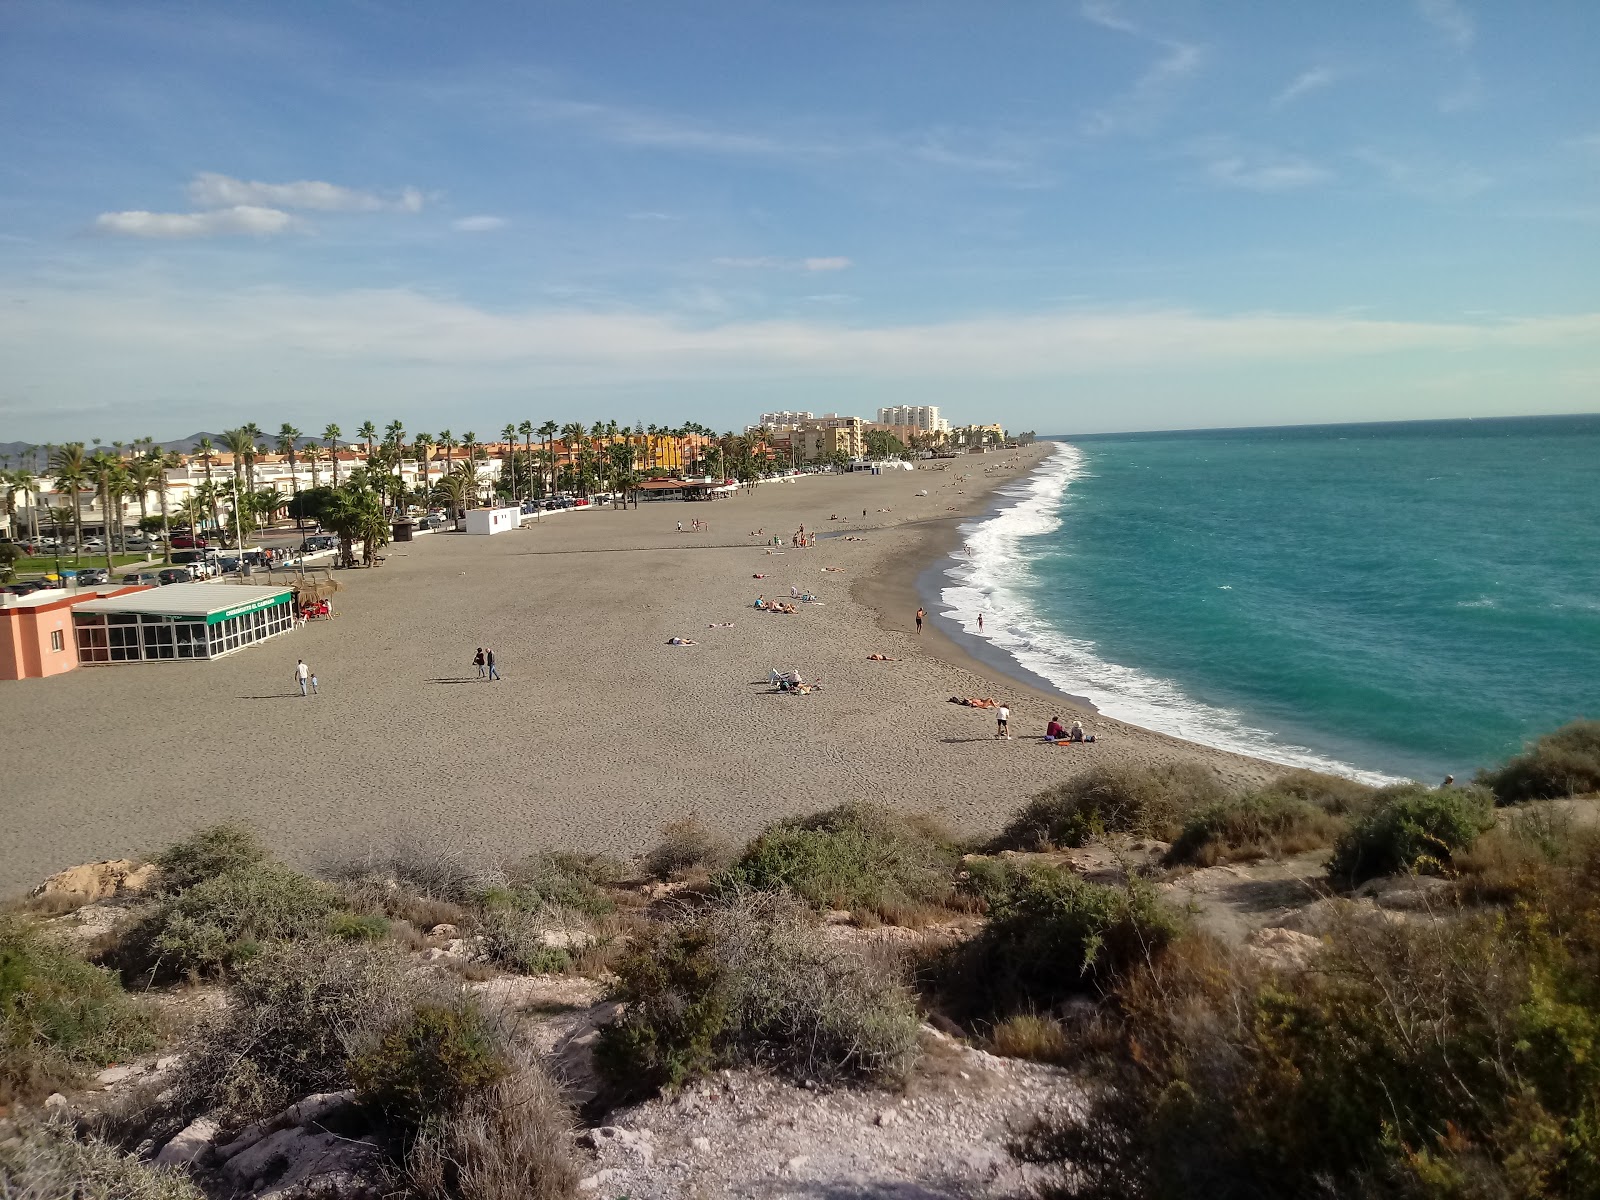 Playas de Salobrena'in fotoğrafı gri ince çakıl taş yüzey ile